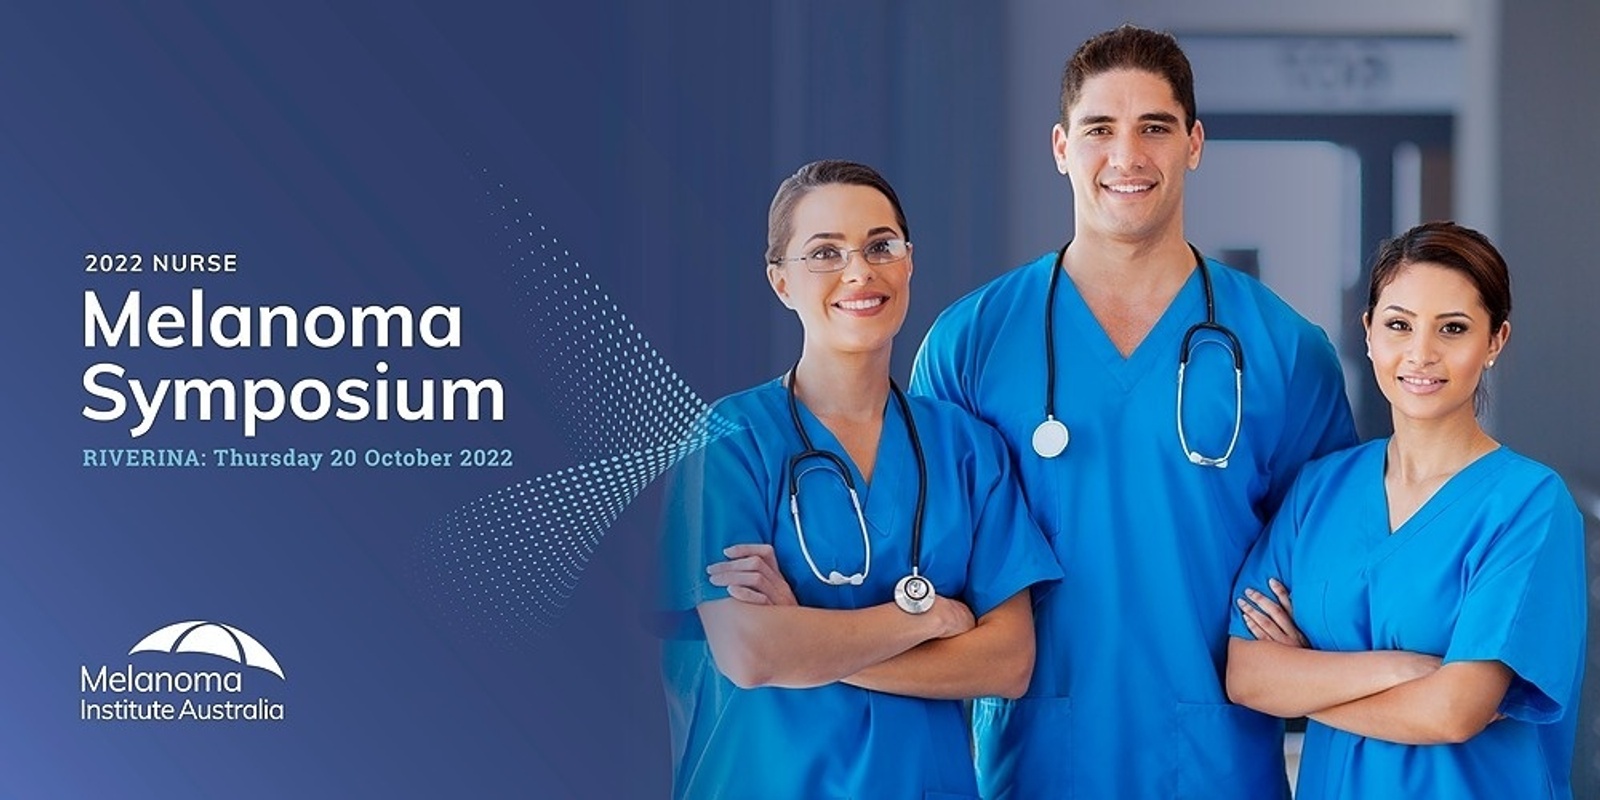 Banner image for 2022 Riverina Nurse Melanoma Symposium